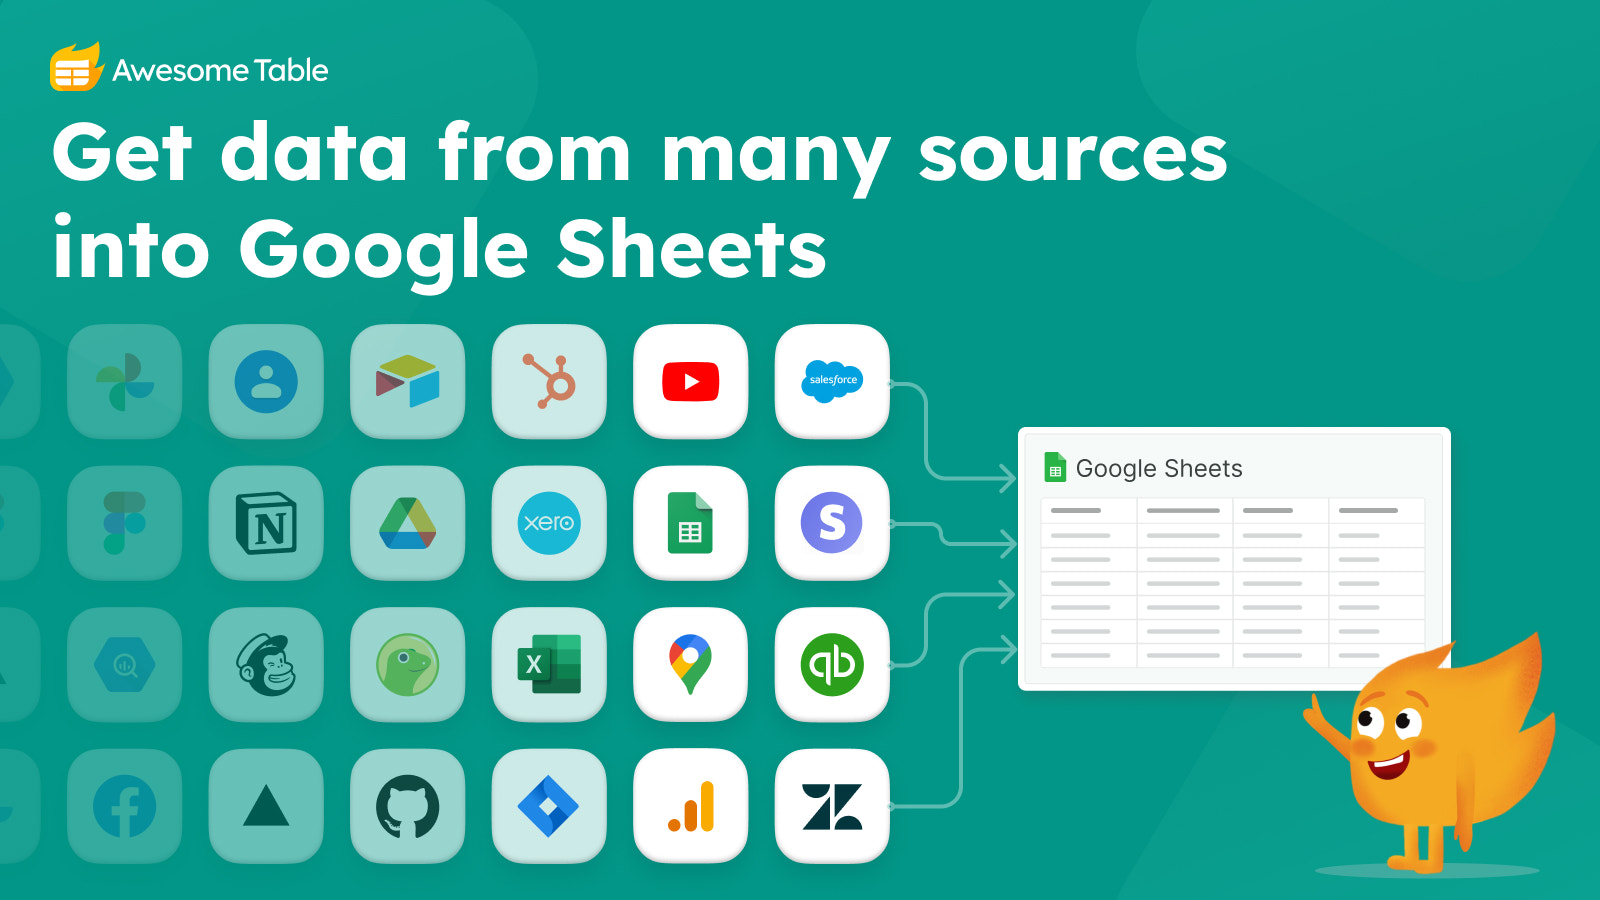 Importe dados para o Google Sheets